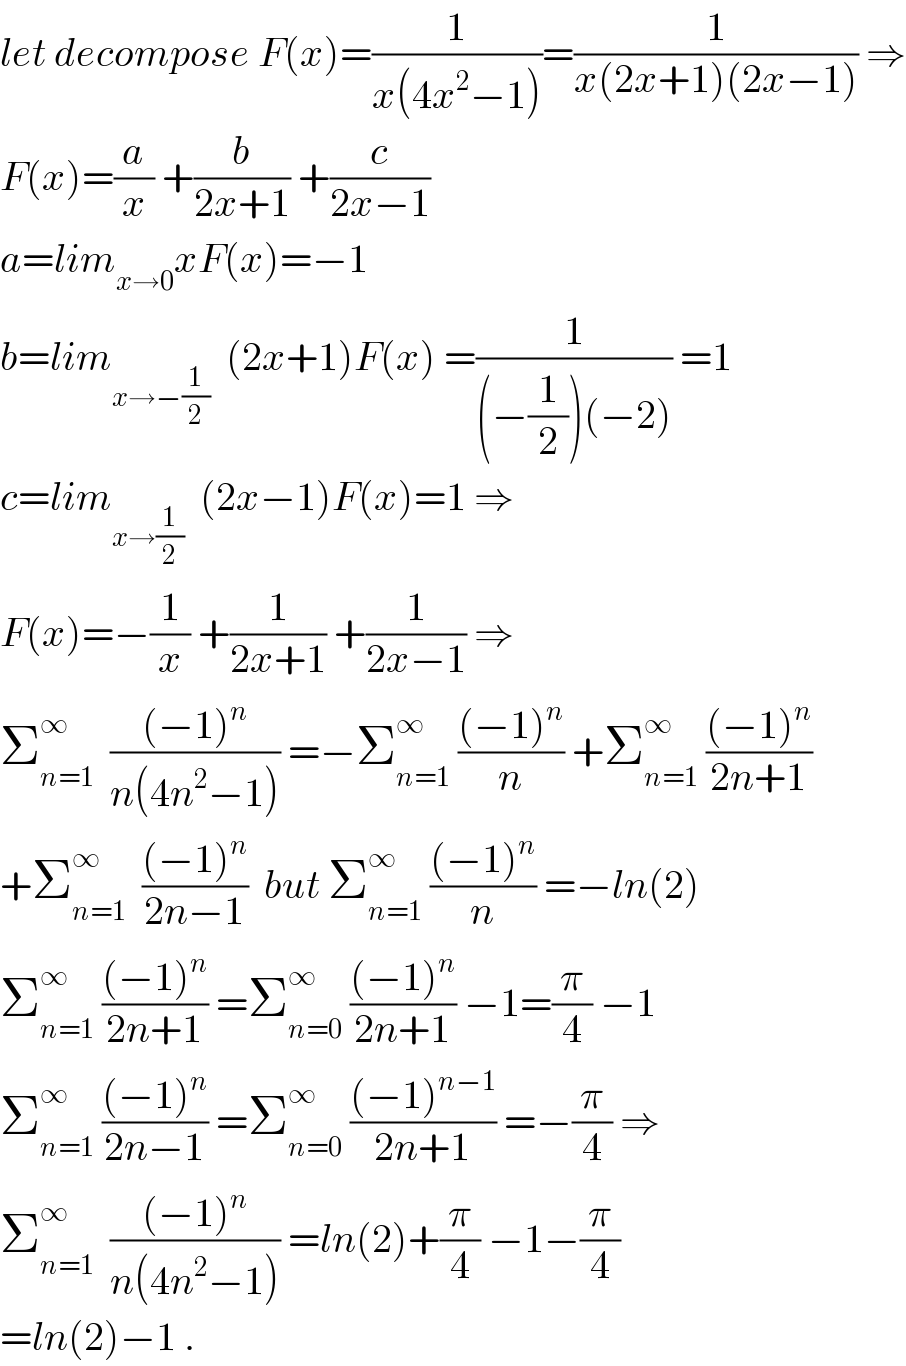 let decompose F(x)=(1/(x(4x^2 −1)))=(1/(x(2x+1)(2x−1))) ⇒  F(x)=(a/x) +(b/(2x+1)) +(c/(2x−1))  a=lim_(x→0) xF(x)=−1  b=lim_(x→−(1/2))   (2x+1)F(x) =(1/((−(1/2))(−2))) =1  c=lim_(x→(1/2))   (2x−1)F(x)=1 ⇒  F(x)=−(1/x) +(1/(2x+1)) +(1/(2x−1)) ⇒  Σ_(n=1) ^∞   (((−1)^n )/(n(4n^2 −1))) =−Σ_(n=1) ^∞  (((−1)^n )/n) +Σ_(n=1) ^∞  (((−1)^n )/(2n+1))  +Σ_(n=1) ^∞   (((−1)^n )/(2n−1))  but Σ_(n=1) ^∞  (((−1)^n )/n) =−ln(2)  Σ_(n=1) ^∞  (((−1)^n )/(2n+1)) =Σ_(n=0) ^∞  (((−1)^n )/(2n+1)) −1=(π/4) −1  Σ_(n=1) ^∞  (((−1)^n )/(2n−1)) =Σ_(n=0) ^∞  (((−1)^(n−1) )/(2n+1)) =−(π/4) ⇒  Σ_(n=1) ^∞   (((−1)^n )/(n(4n^2 −1))) =ln(2)+(π/4) −1−(π/4)  =ln(2)−1 .  